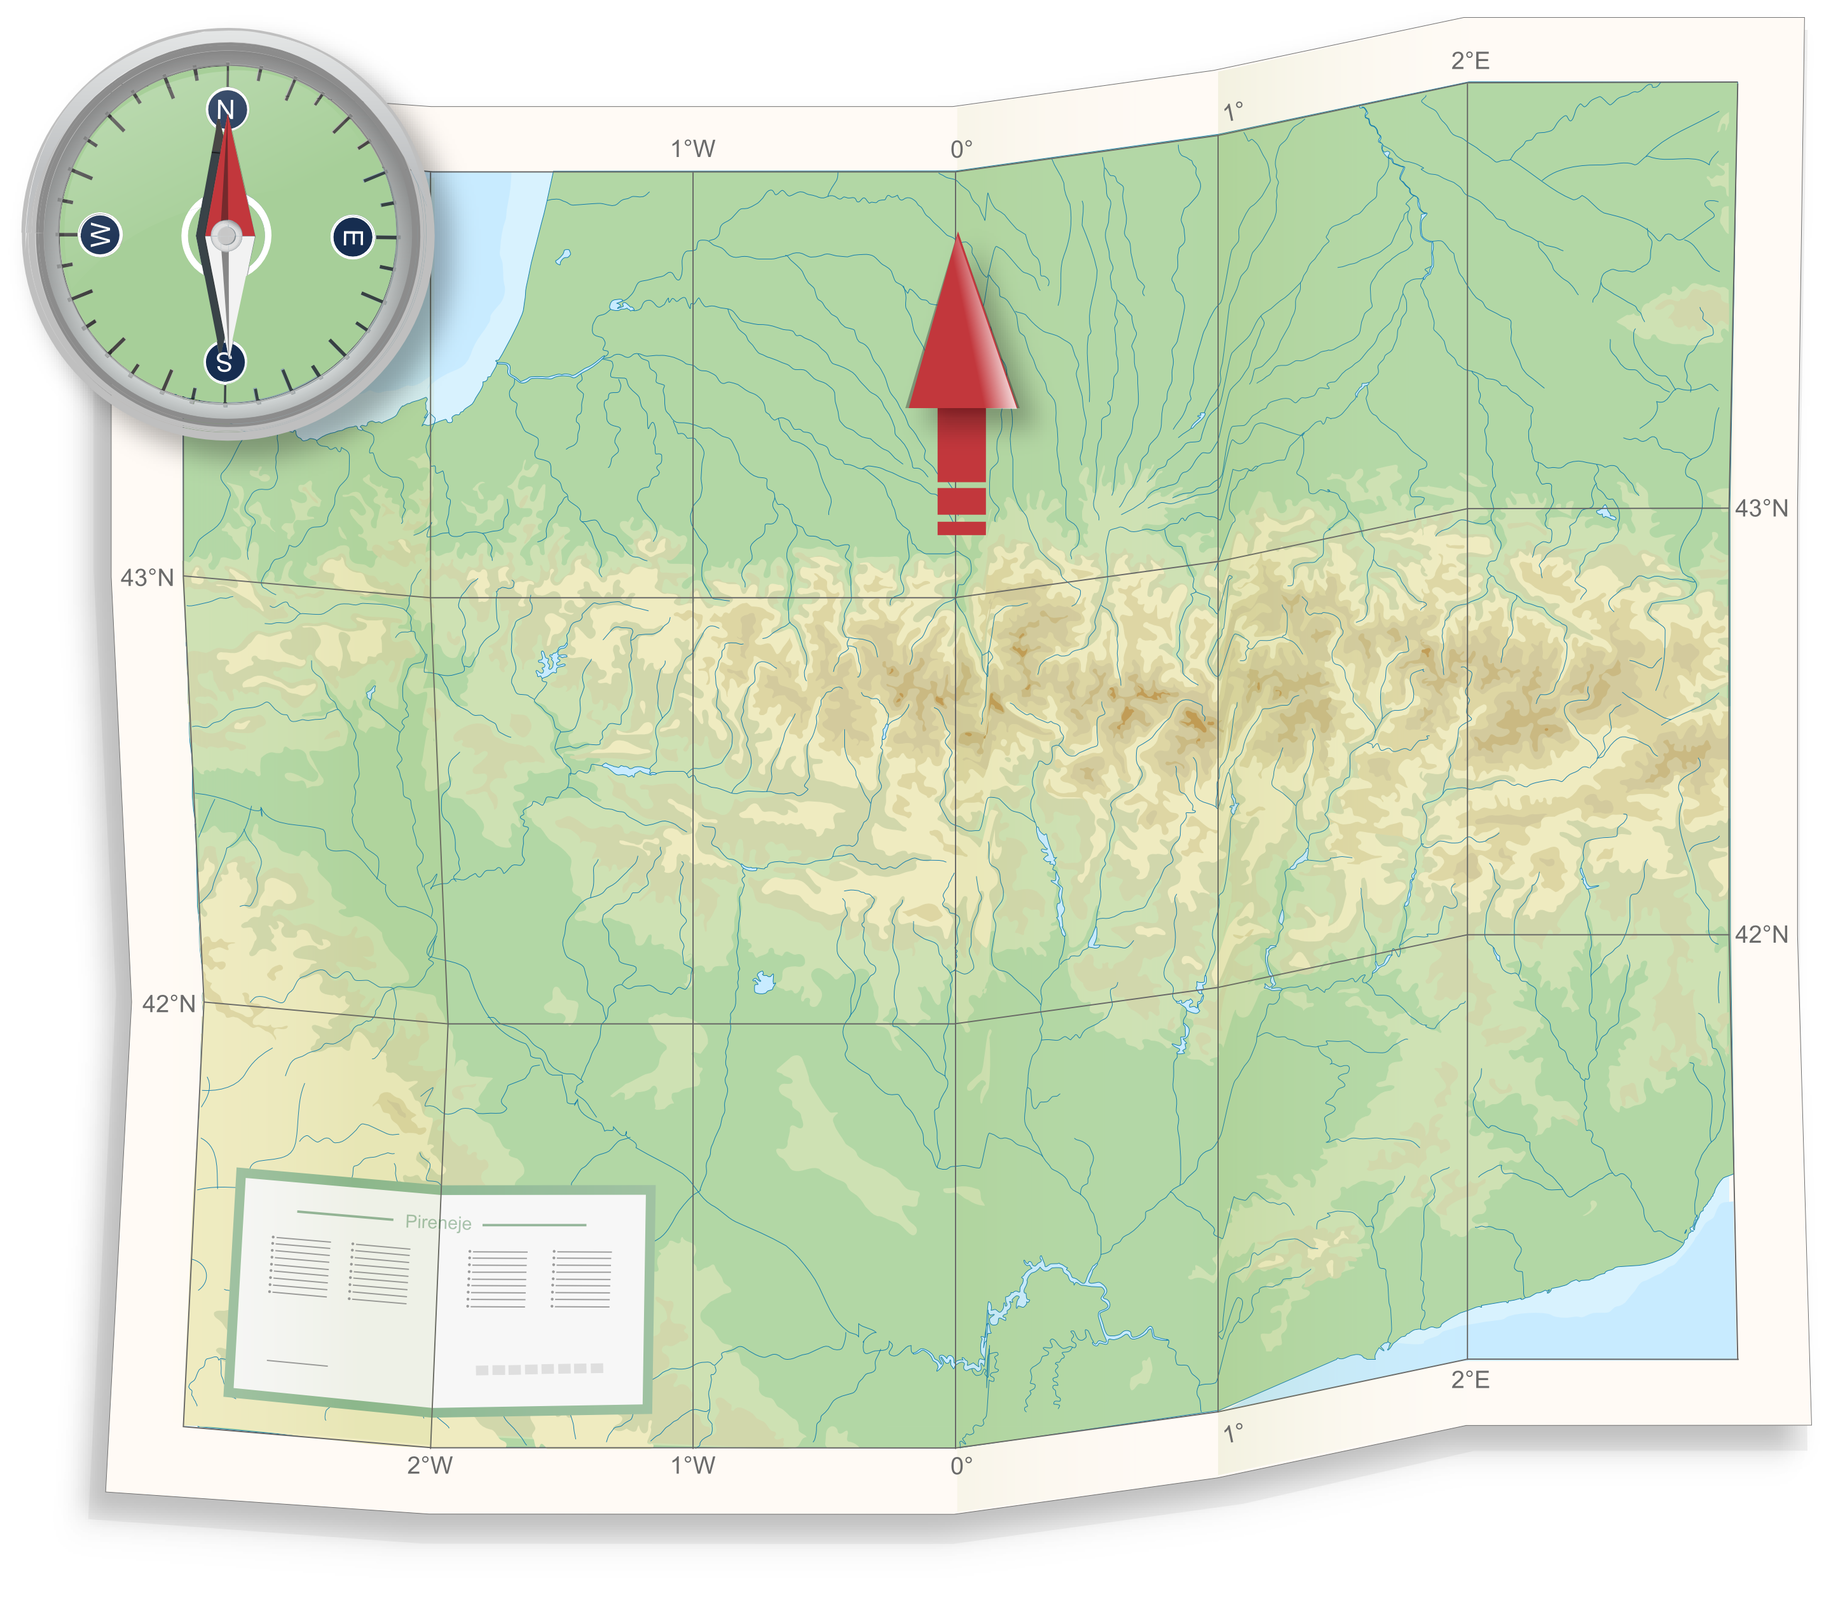 Ilustracja przedstawia papierową mapę terenu. Na mapie zaznaczone południki i równoleżniki. Teren pokrywają niebieskie linie oznaczające rzeki. Kolor zielony to niziny, żółty to tereny wyżynne, a brązowy to góry. W górnym lewym rogu rysunek kompasu. Na kompasie zaznaczone główne kierunki świata: N – północ, S – południe, E – wschód, W – zachód. Czerwony kolor igły magnetycznej skierowany na północ. Czerwona strzałka na górze mapy wycelowana na północ. Kierunek północny na mapie pokrywa się ze wskazywanym kierunkiem północnym przez kompas.